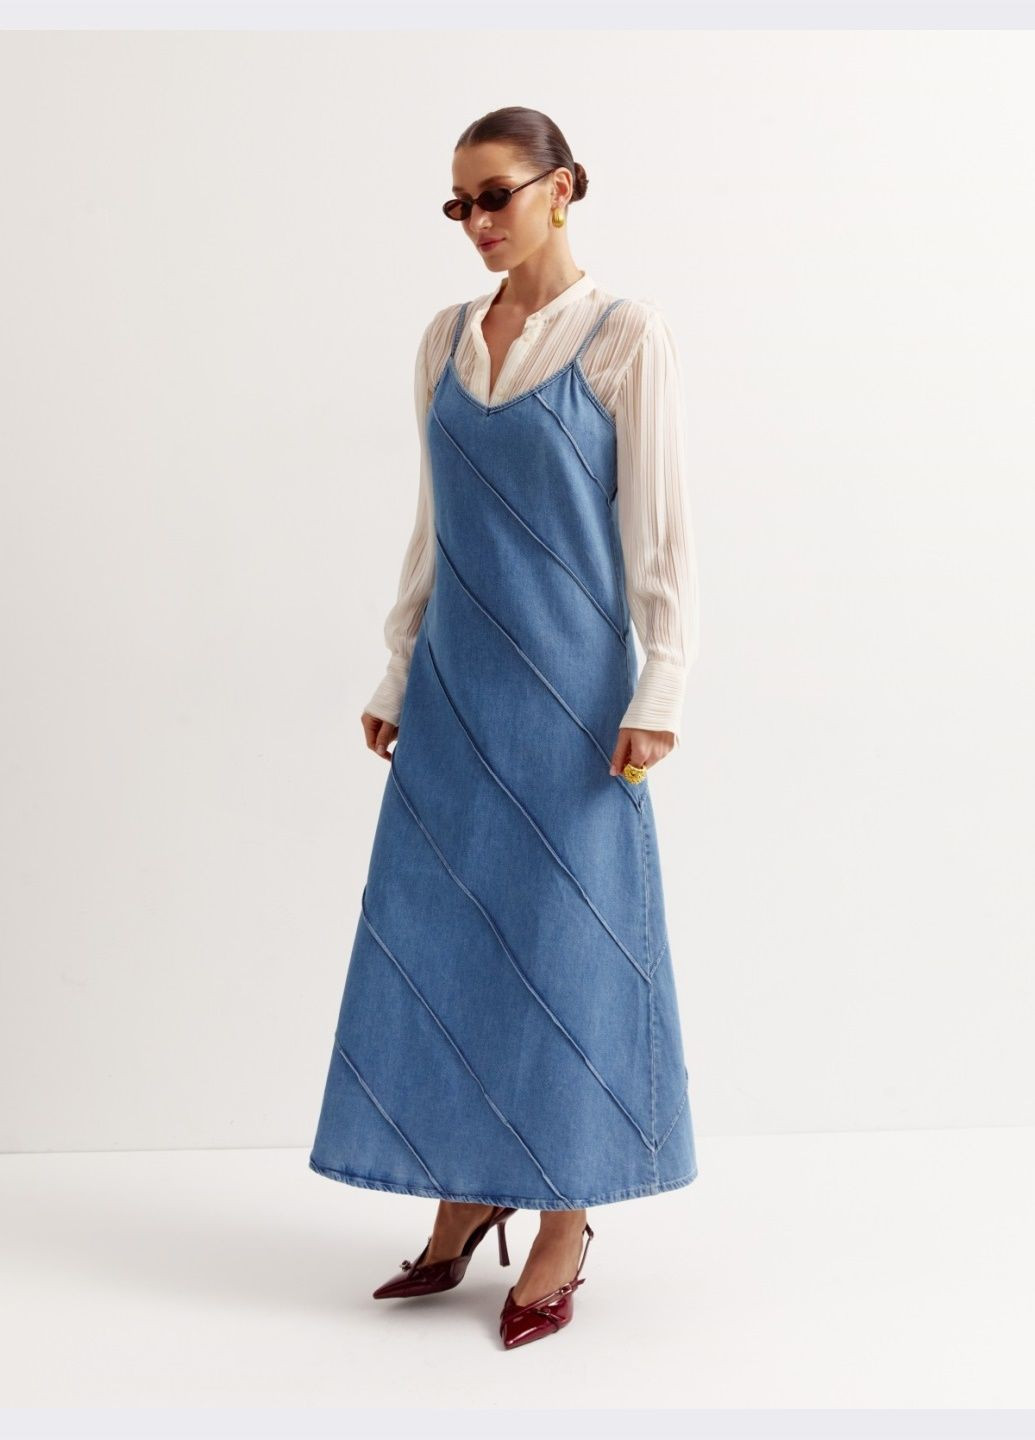 женский длинный джинсовый сарафан голубого цвета Dressa